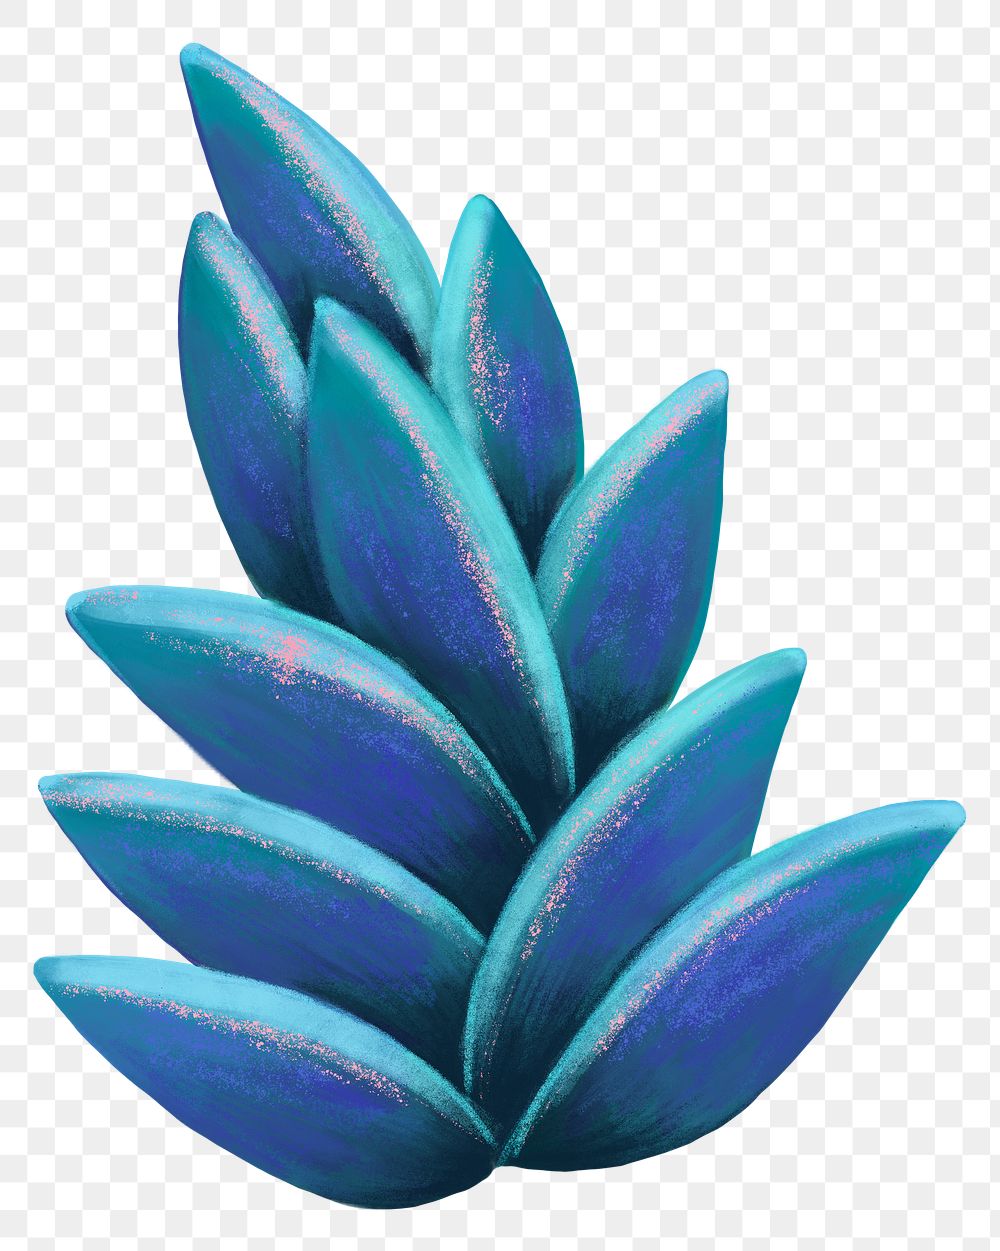 Blue leaves png sticker, botanical illustration, transparent background